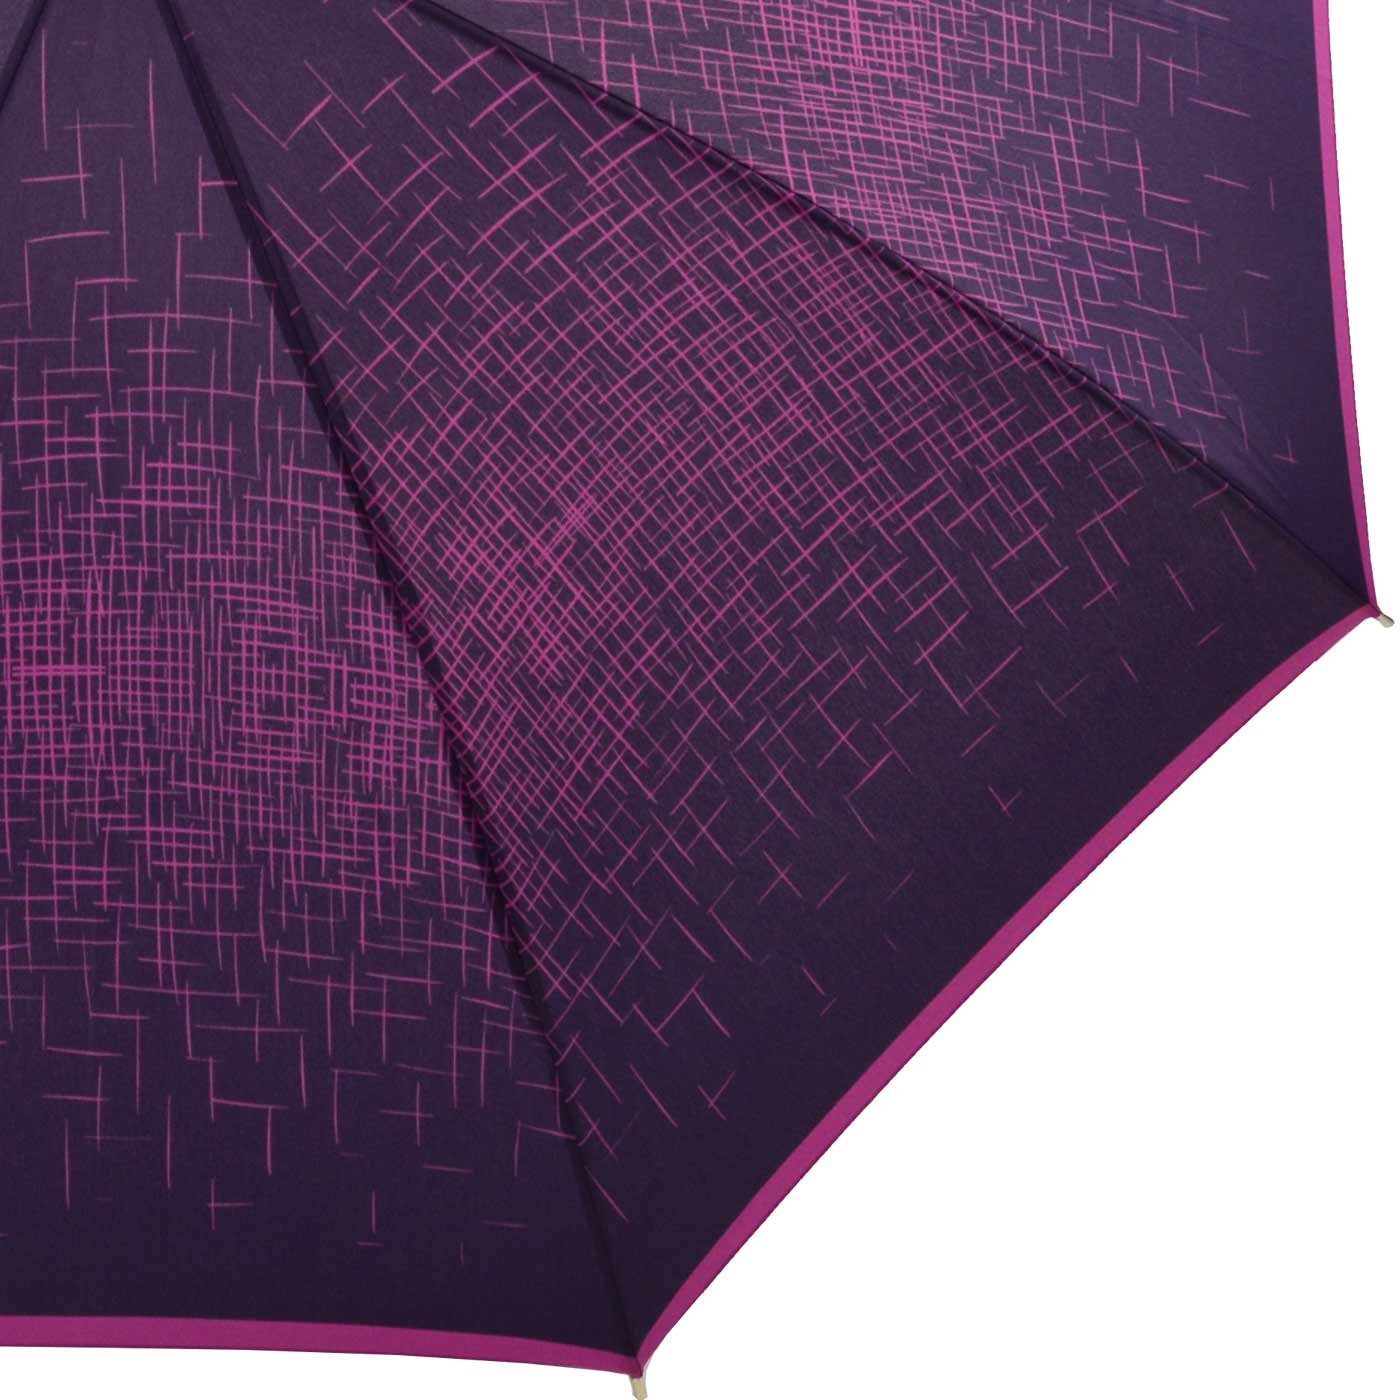 Damenschirm großen besondere Auftritt bedruckter berry der den extravagant Langregenschirm Auf-Automatik, doppler® Schirm für